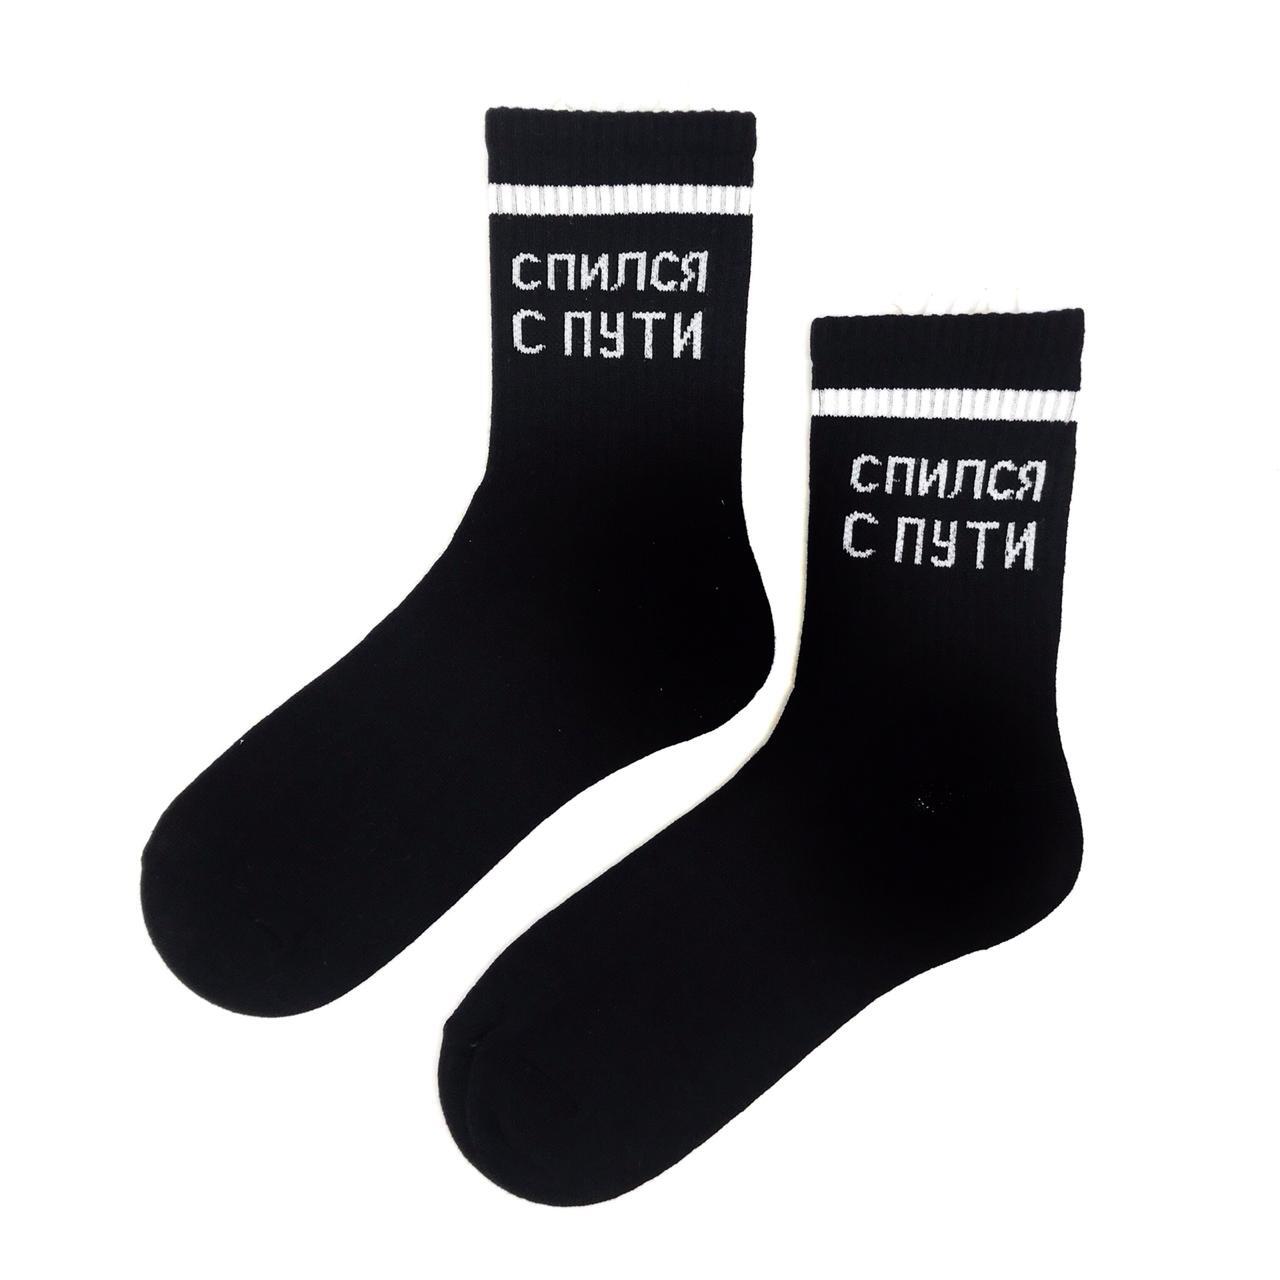 Купить носки socks. Носки для взрослых черные. Кос -в = Сокс +в. Lenyul носки Страна производитель. Носки зебры80% хлопок17% +отзывы.